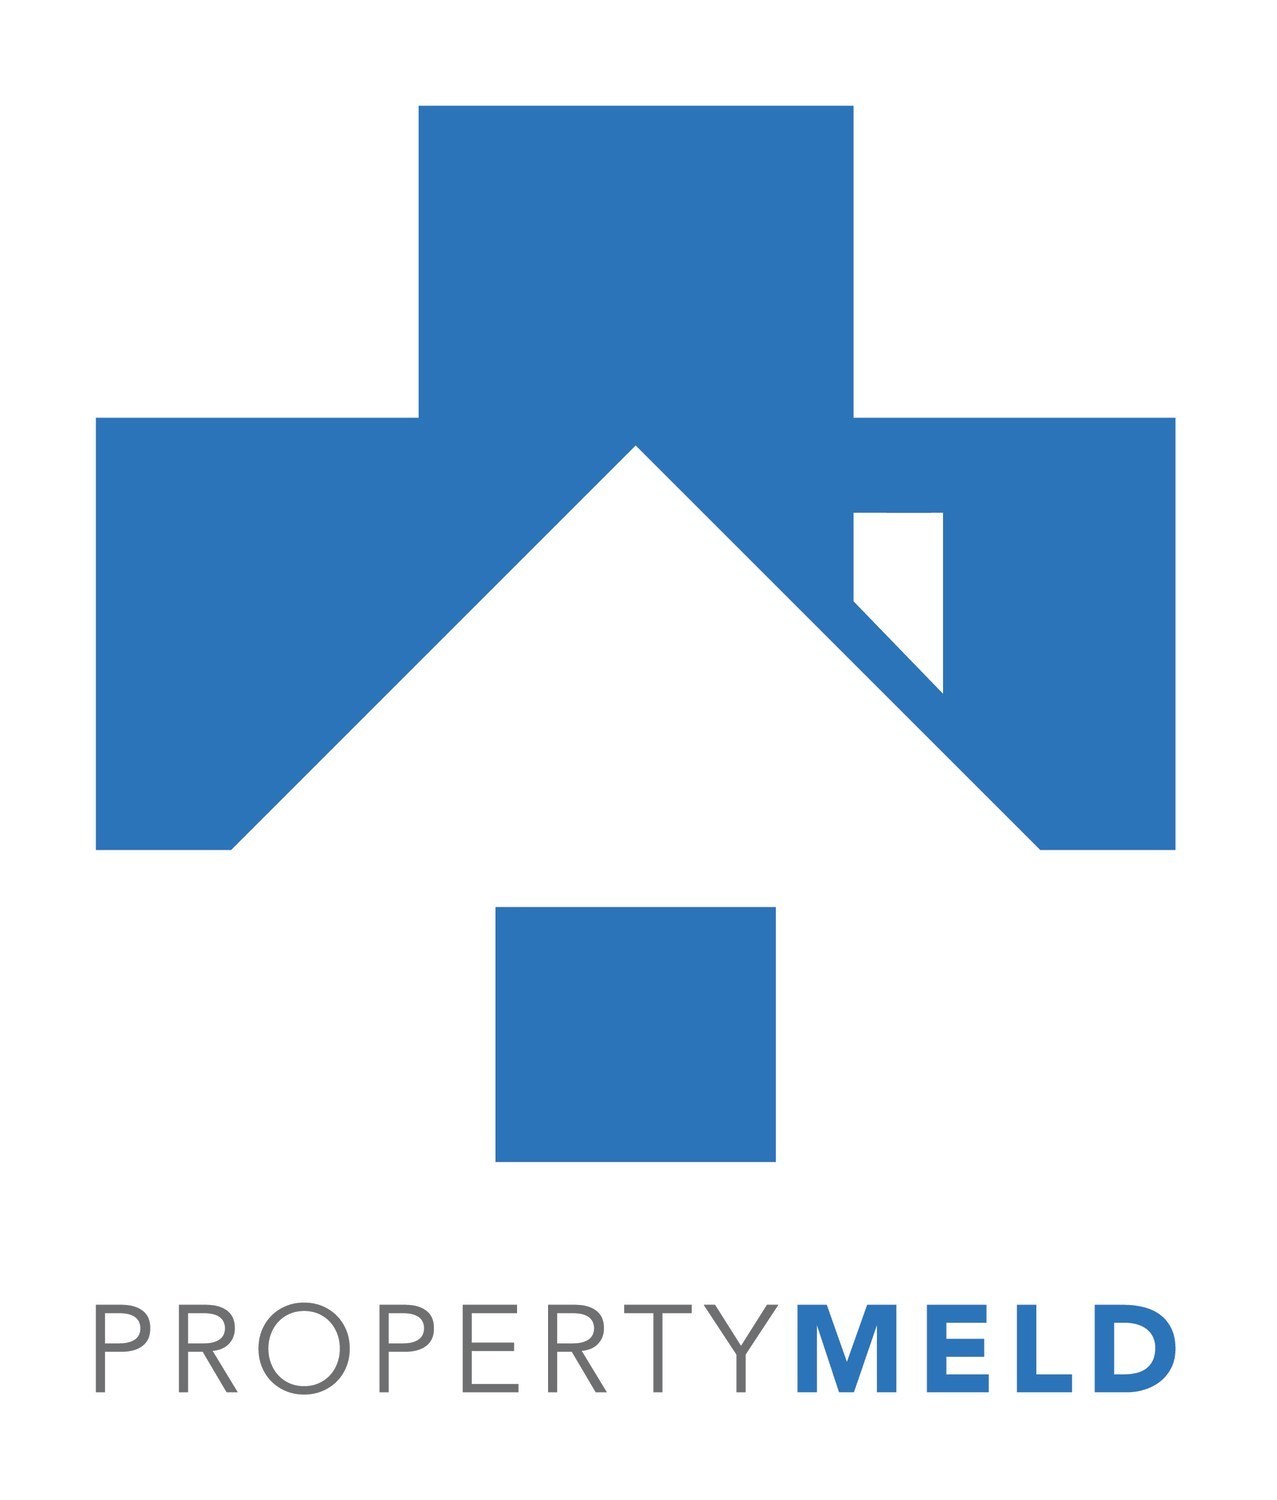 Property Meld (PRNewsfoto/Property Meld)